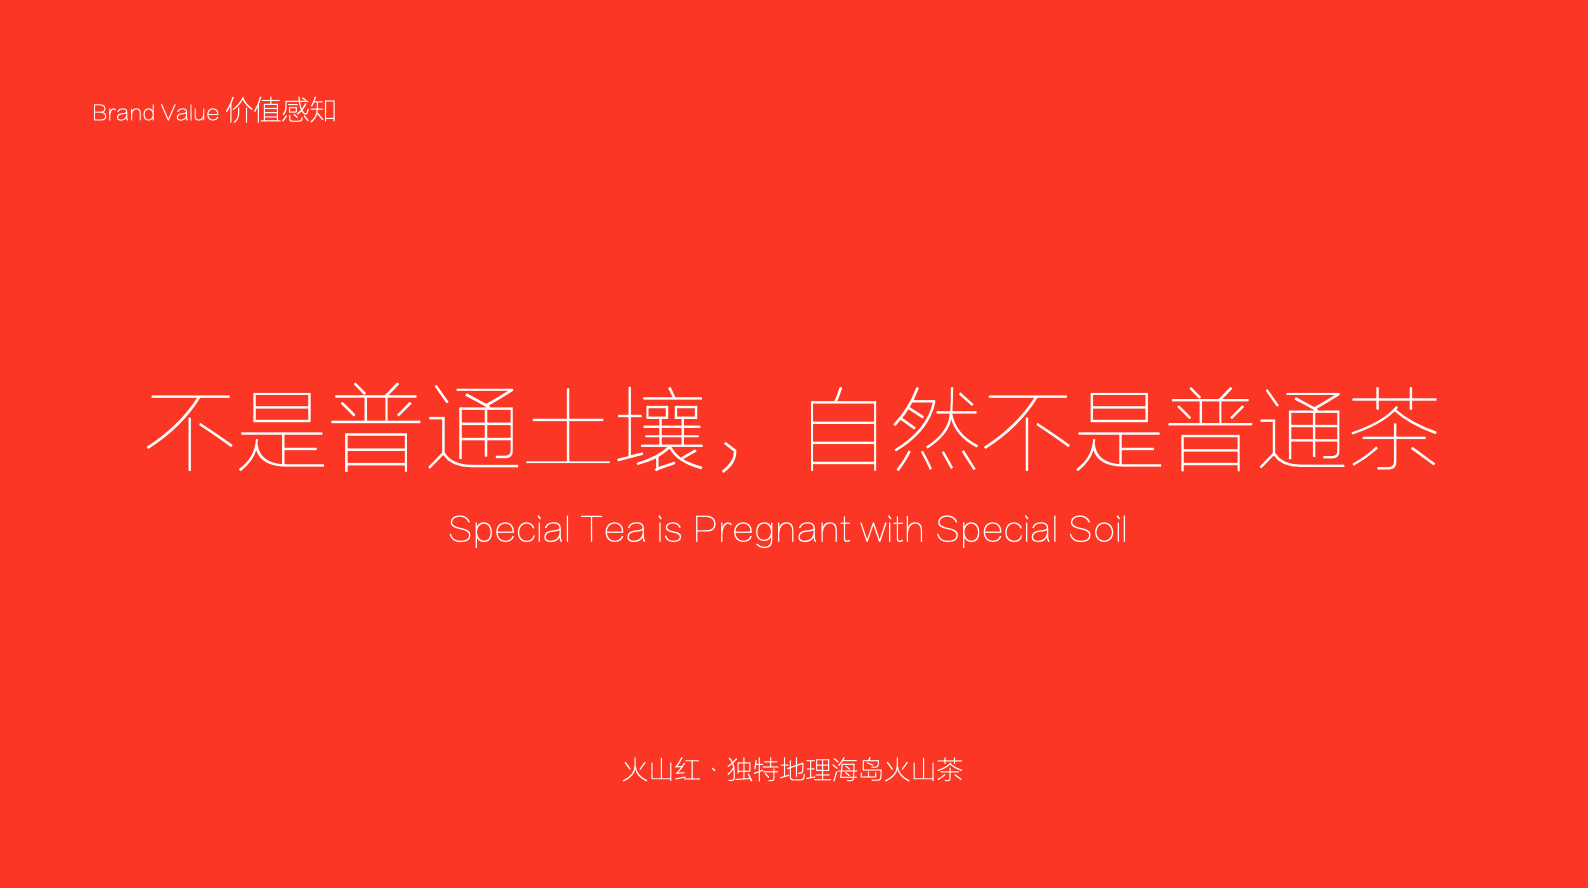 食品品牌策划设计-茶叶品牌策划-杭州品牌营销咨询